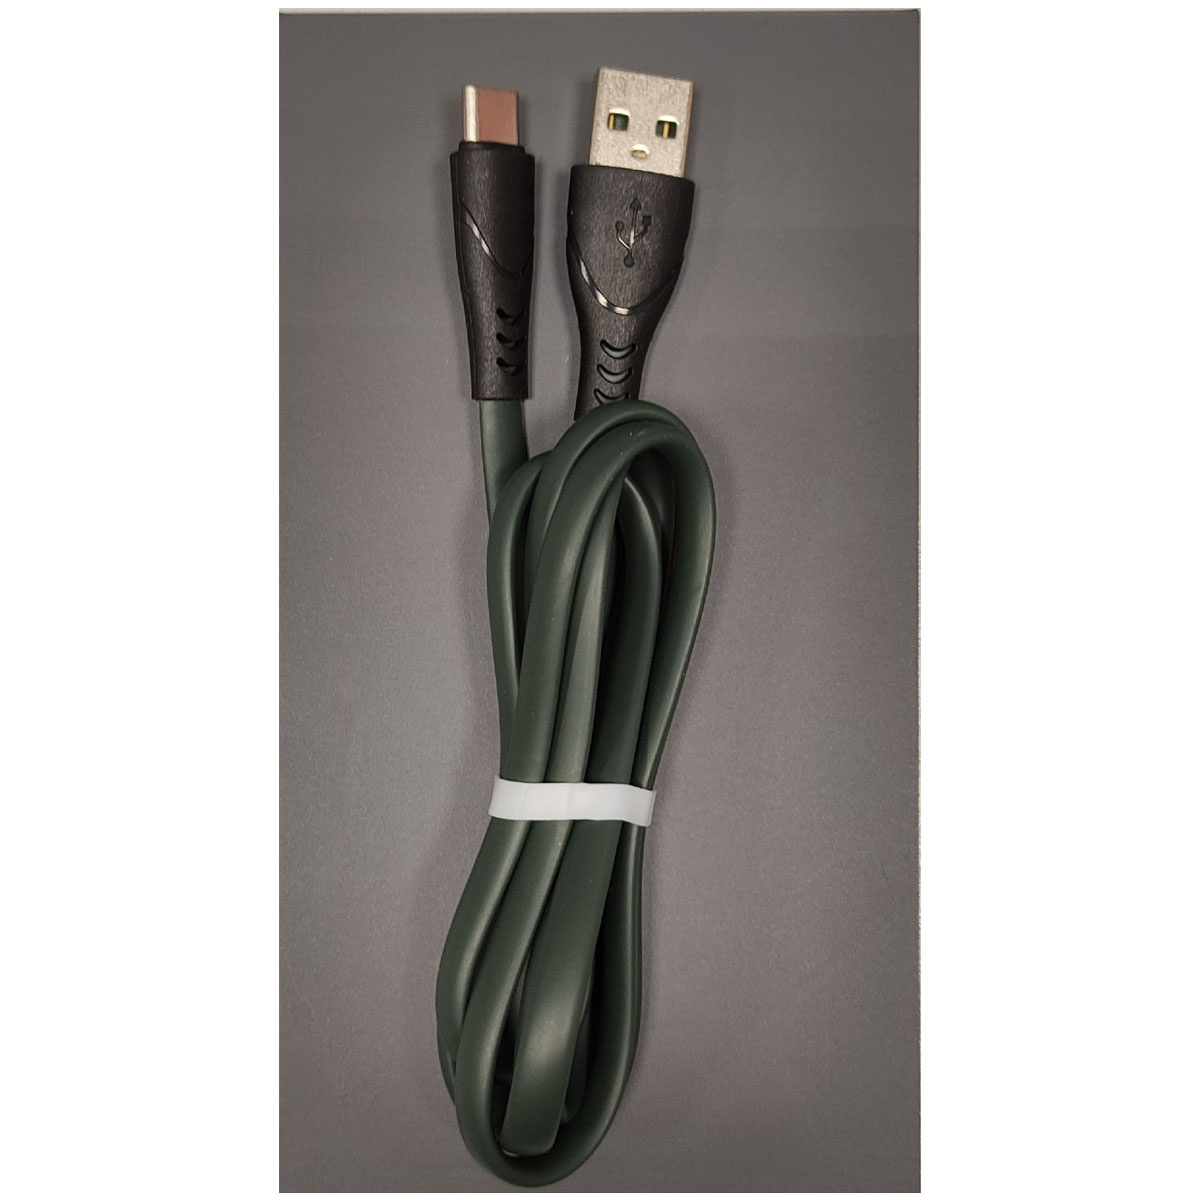 Кабель G08 USB Type C, длина 1 метр, цвет черно зеленый